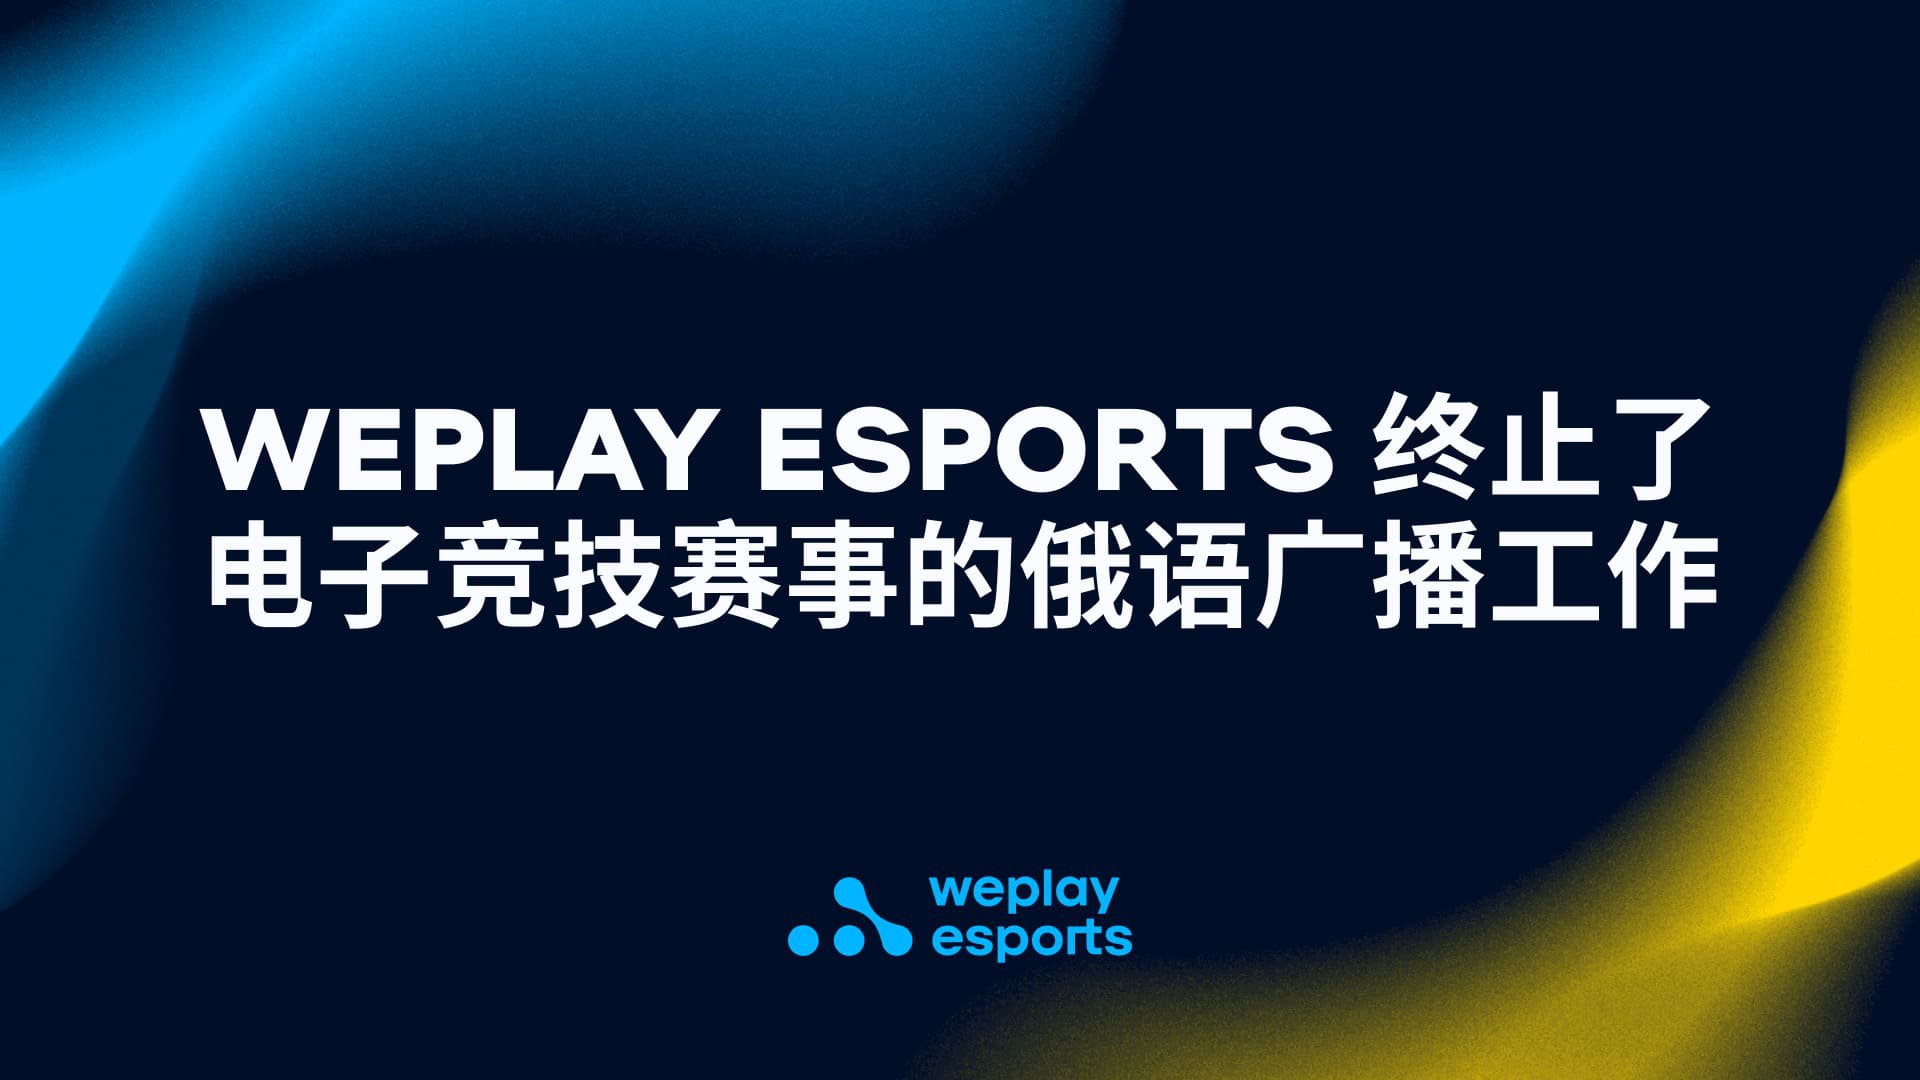 WePlay Esports 终止了电子竞技赛事的俄语广播工作